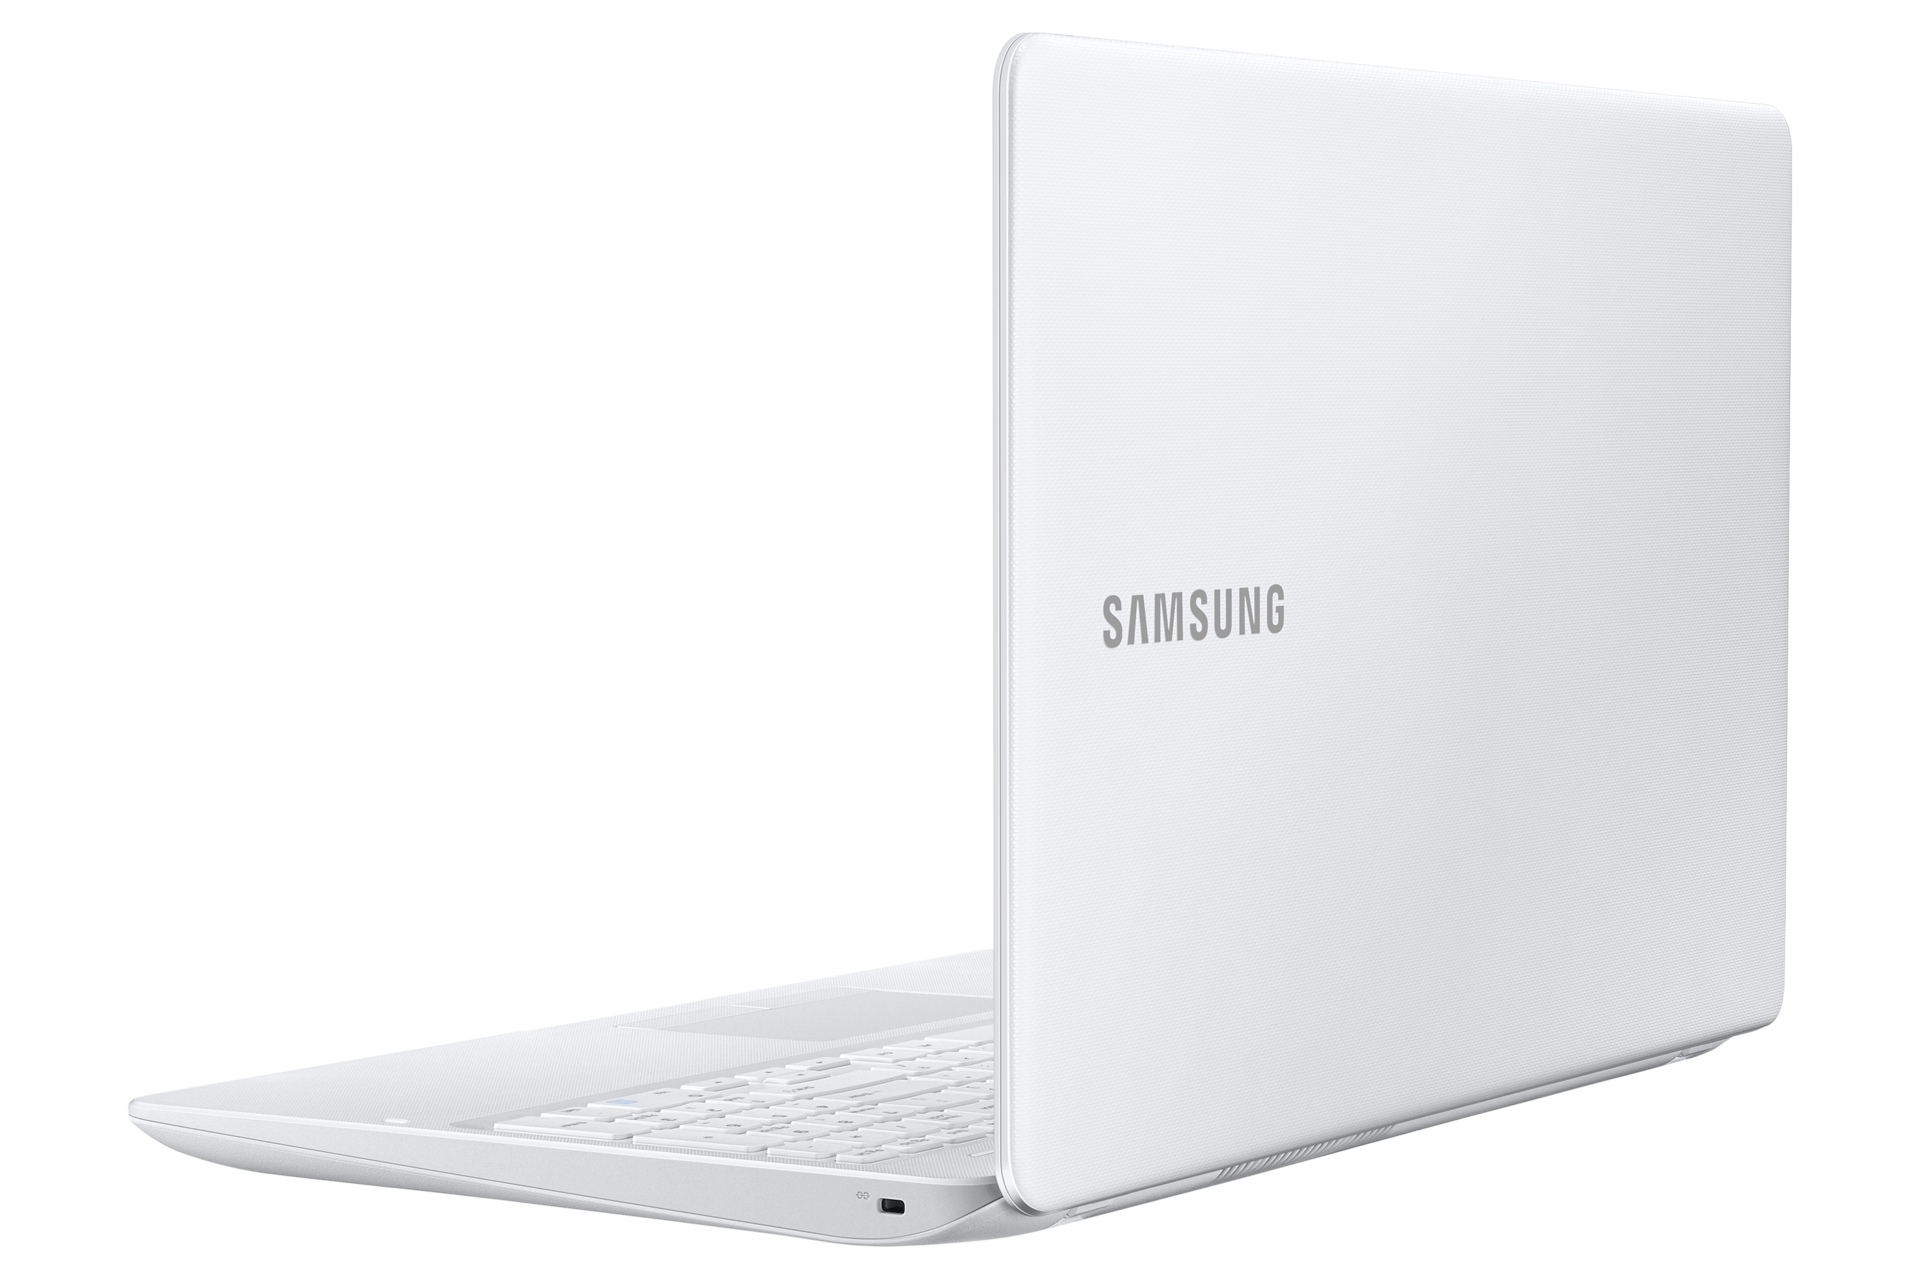 노트북 3 (39.6 cm)
NT300E5L-K34D
Core™ i3 / 128 GB SSD